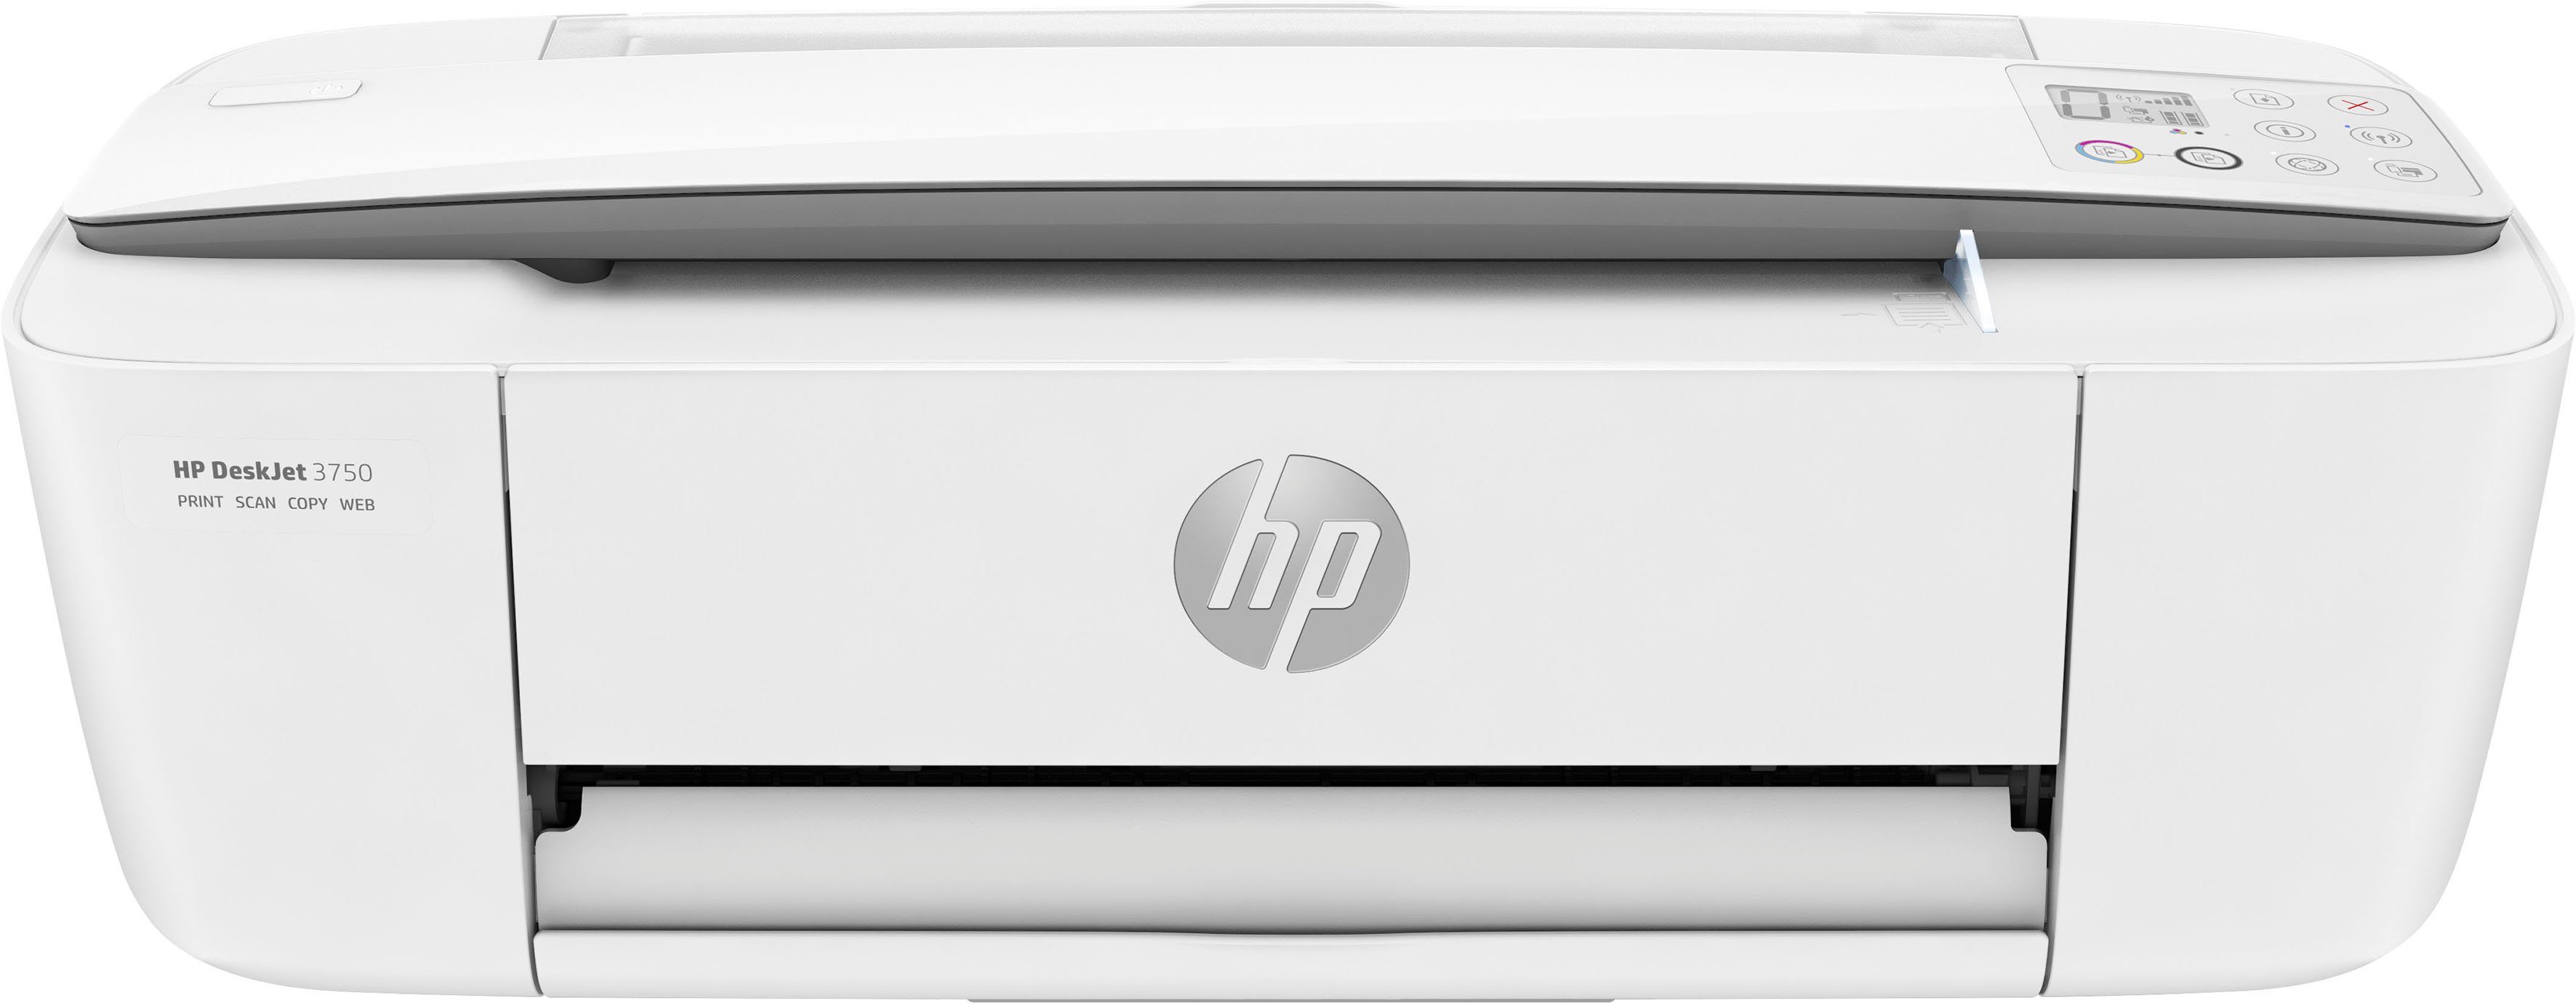 HP Drucker DeskJet 3750 (Wi-Fi), (WLAN Multifunktionsdrucker, Instant kompatibel) Ink HP